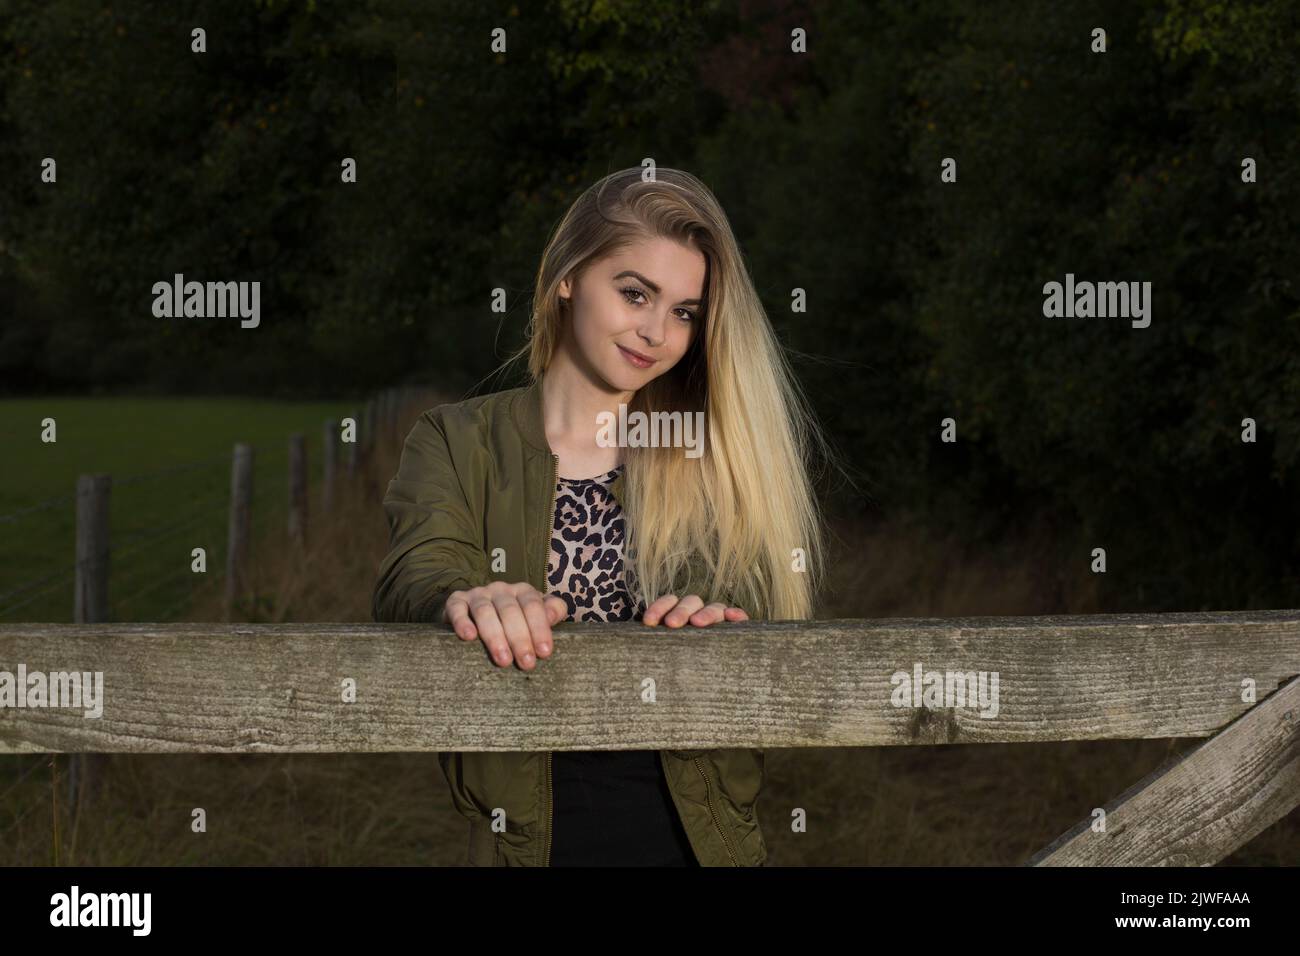 Ein hübscher blonder Teenager, der sich an ein Tor lehnt Stockfoto